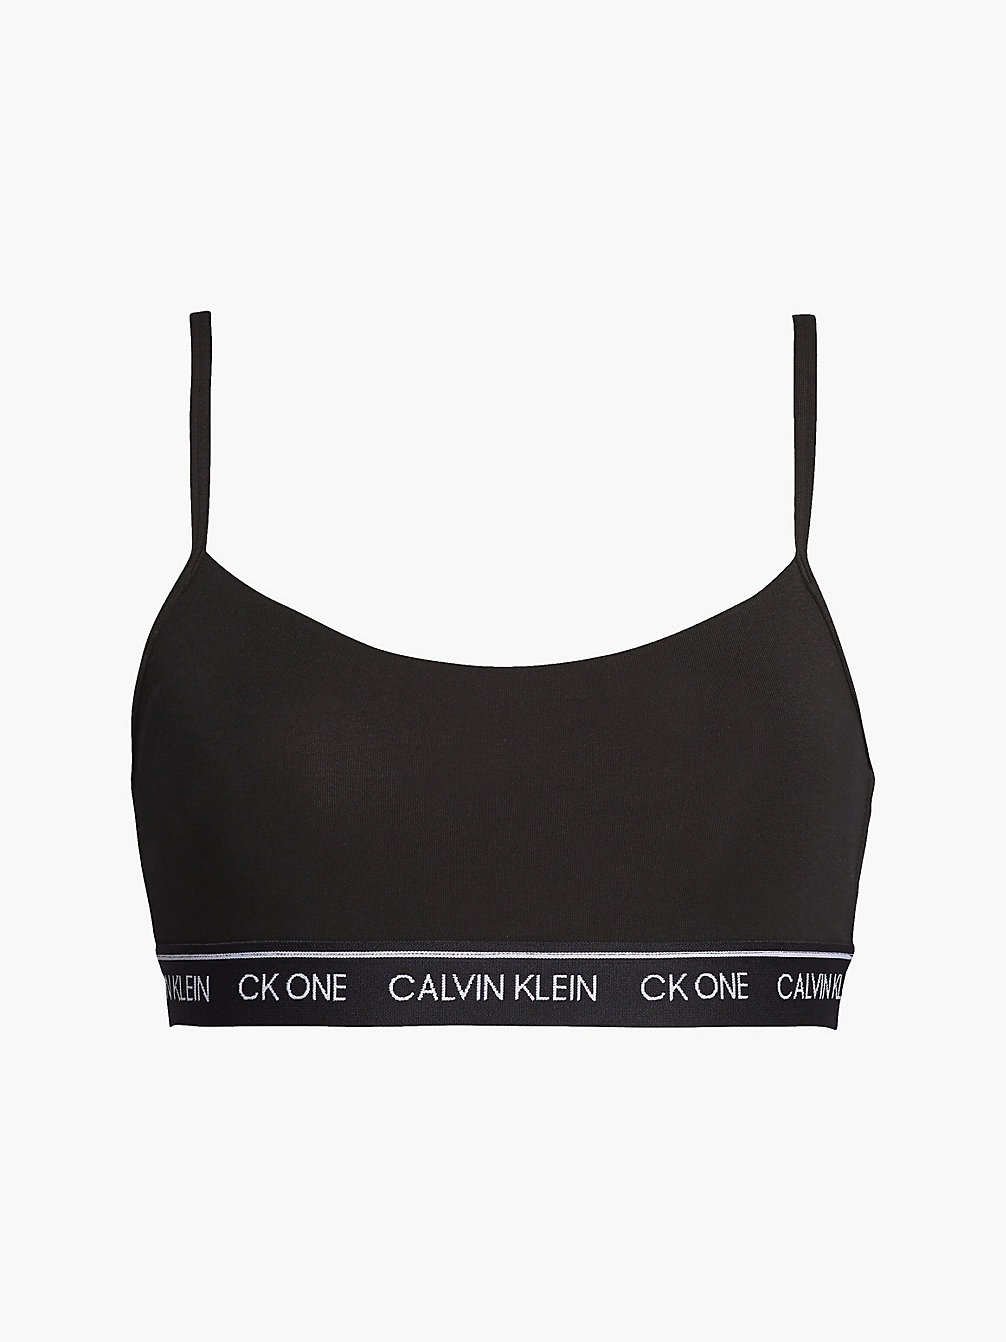 BLACK > String-Bralette – CK One > undefined Damen - Calvin Klein